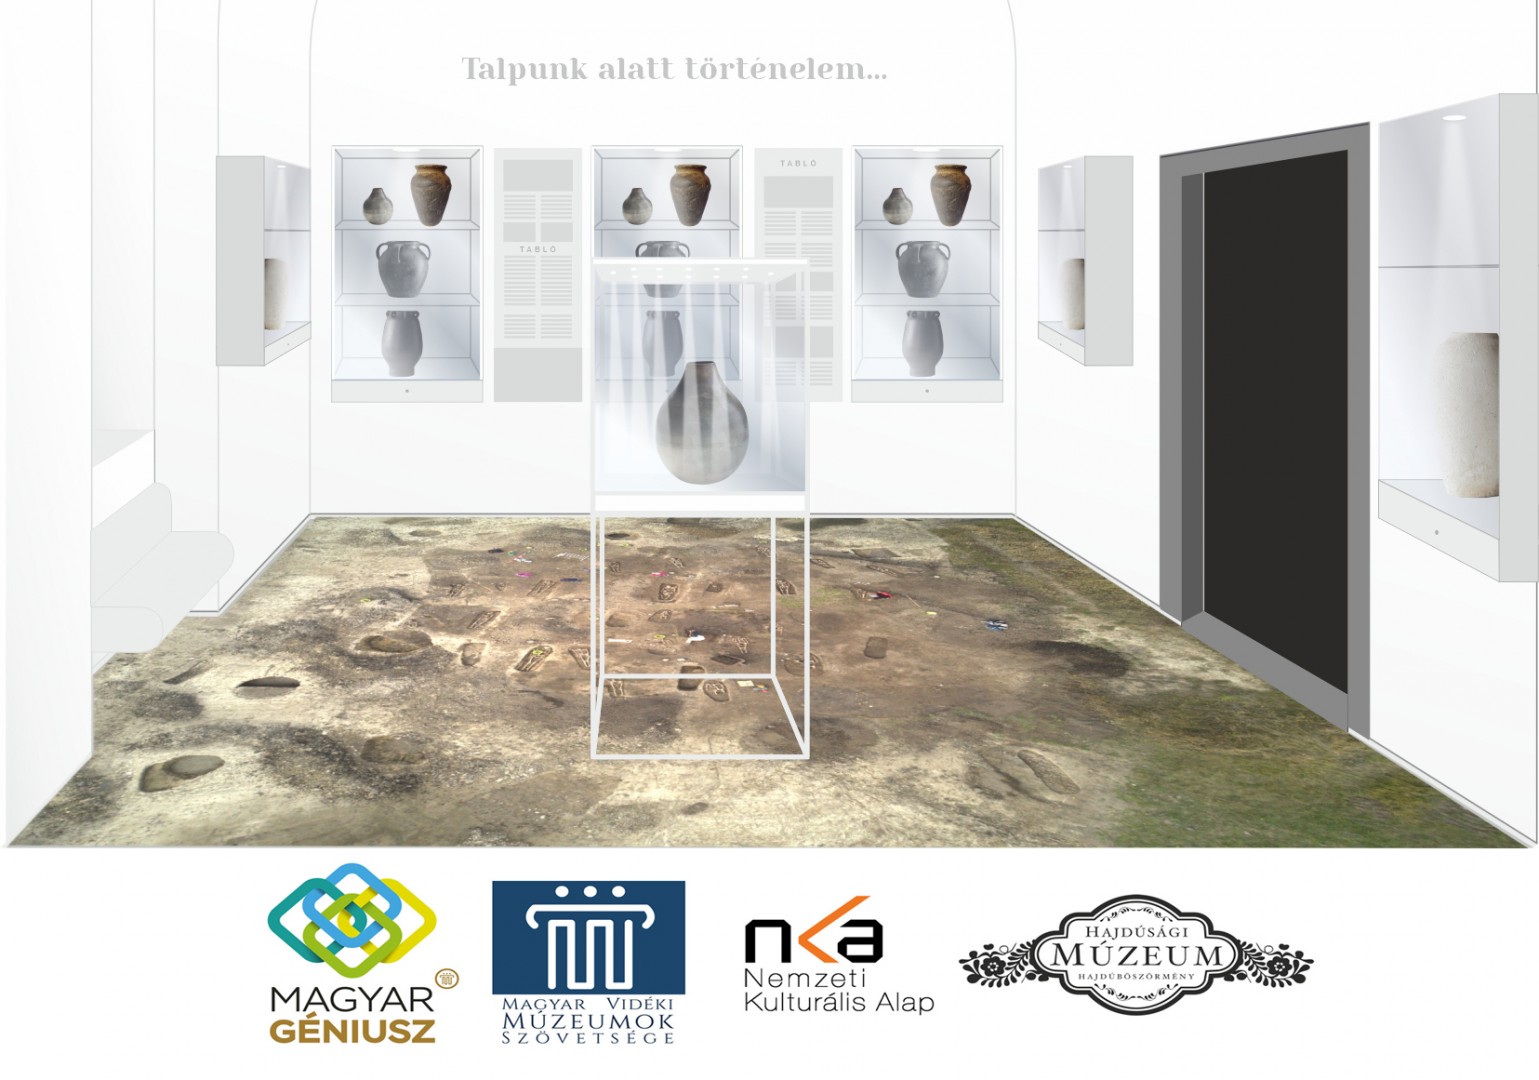 „Talpunk alatt történelem” címmel új régészeti kiállítás készül a Hajdúsági Múzeumban